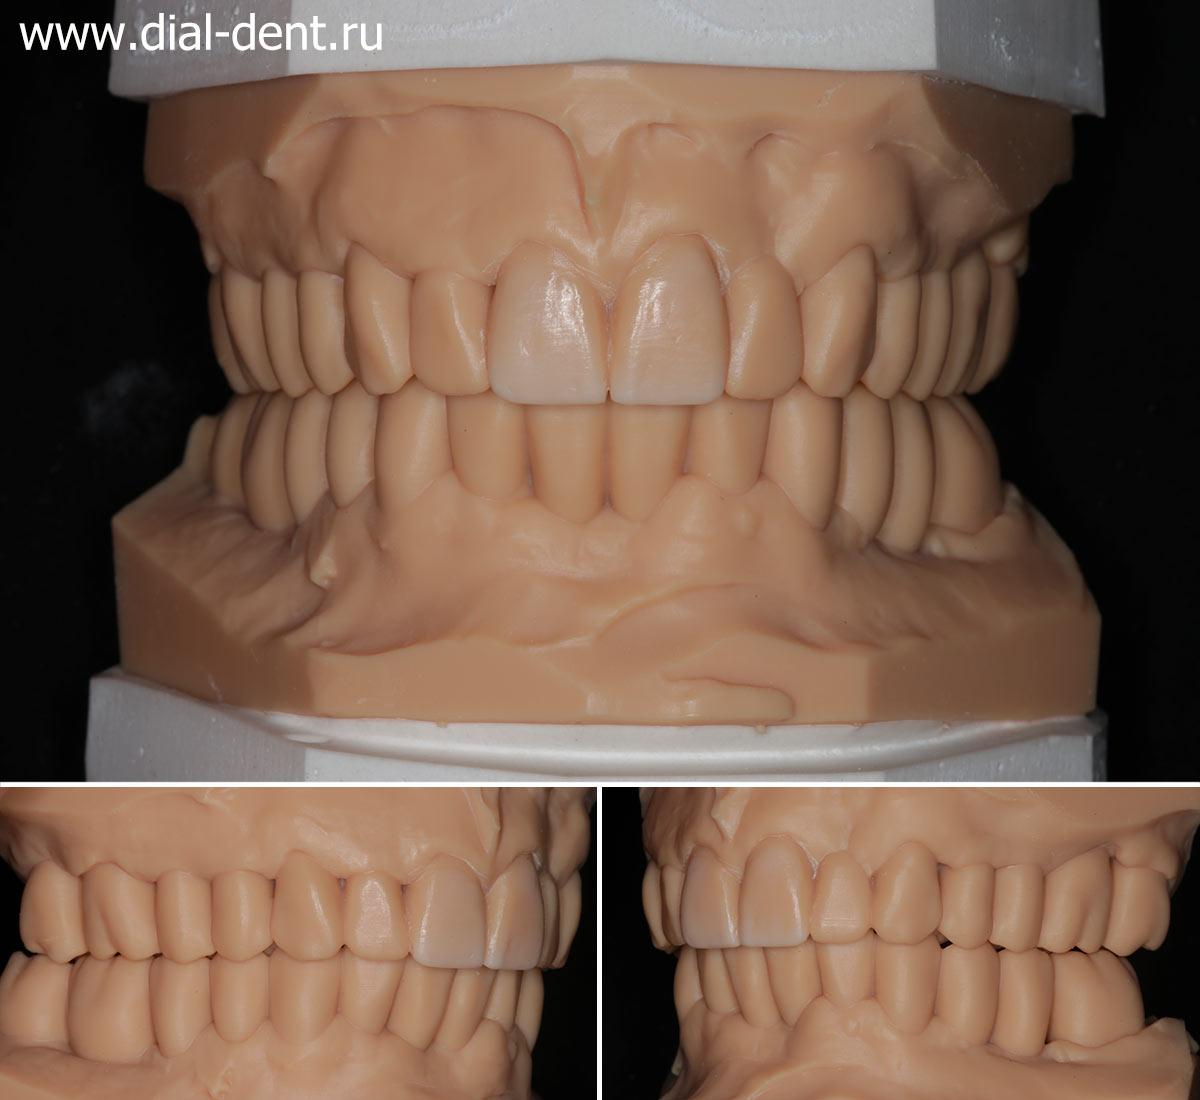 3D модель зубов на основании компьютерного моделирования